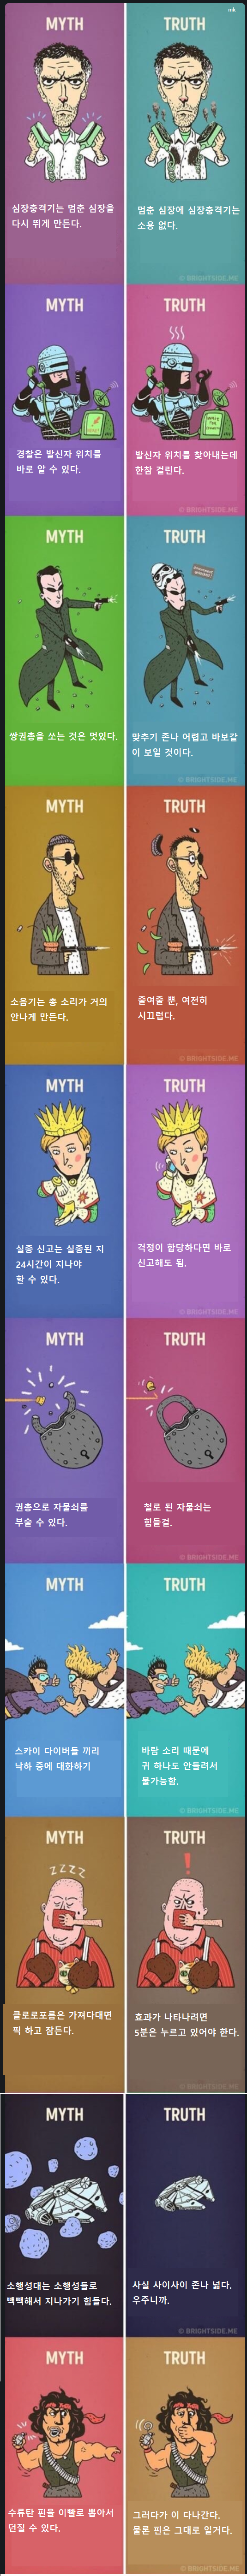 MYTH vs TRUTH.